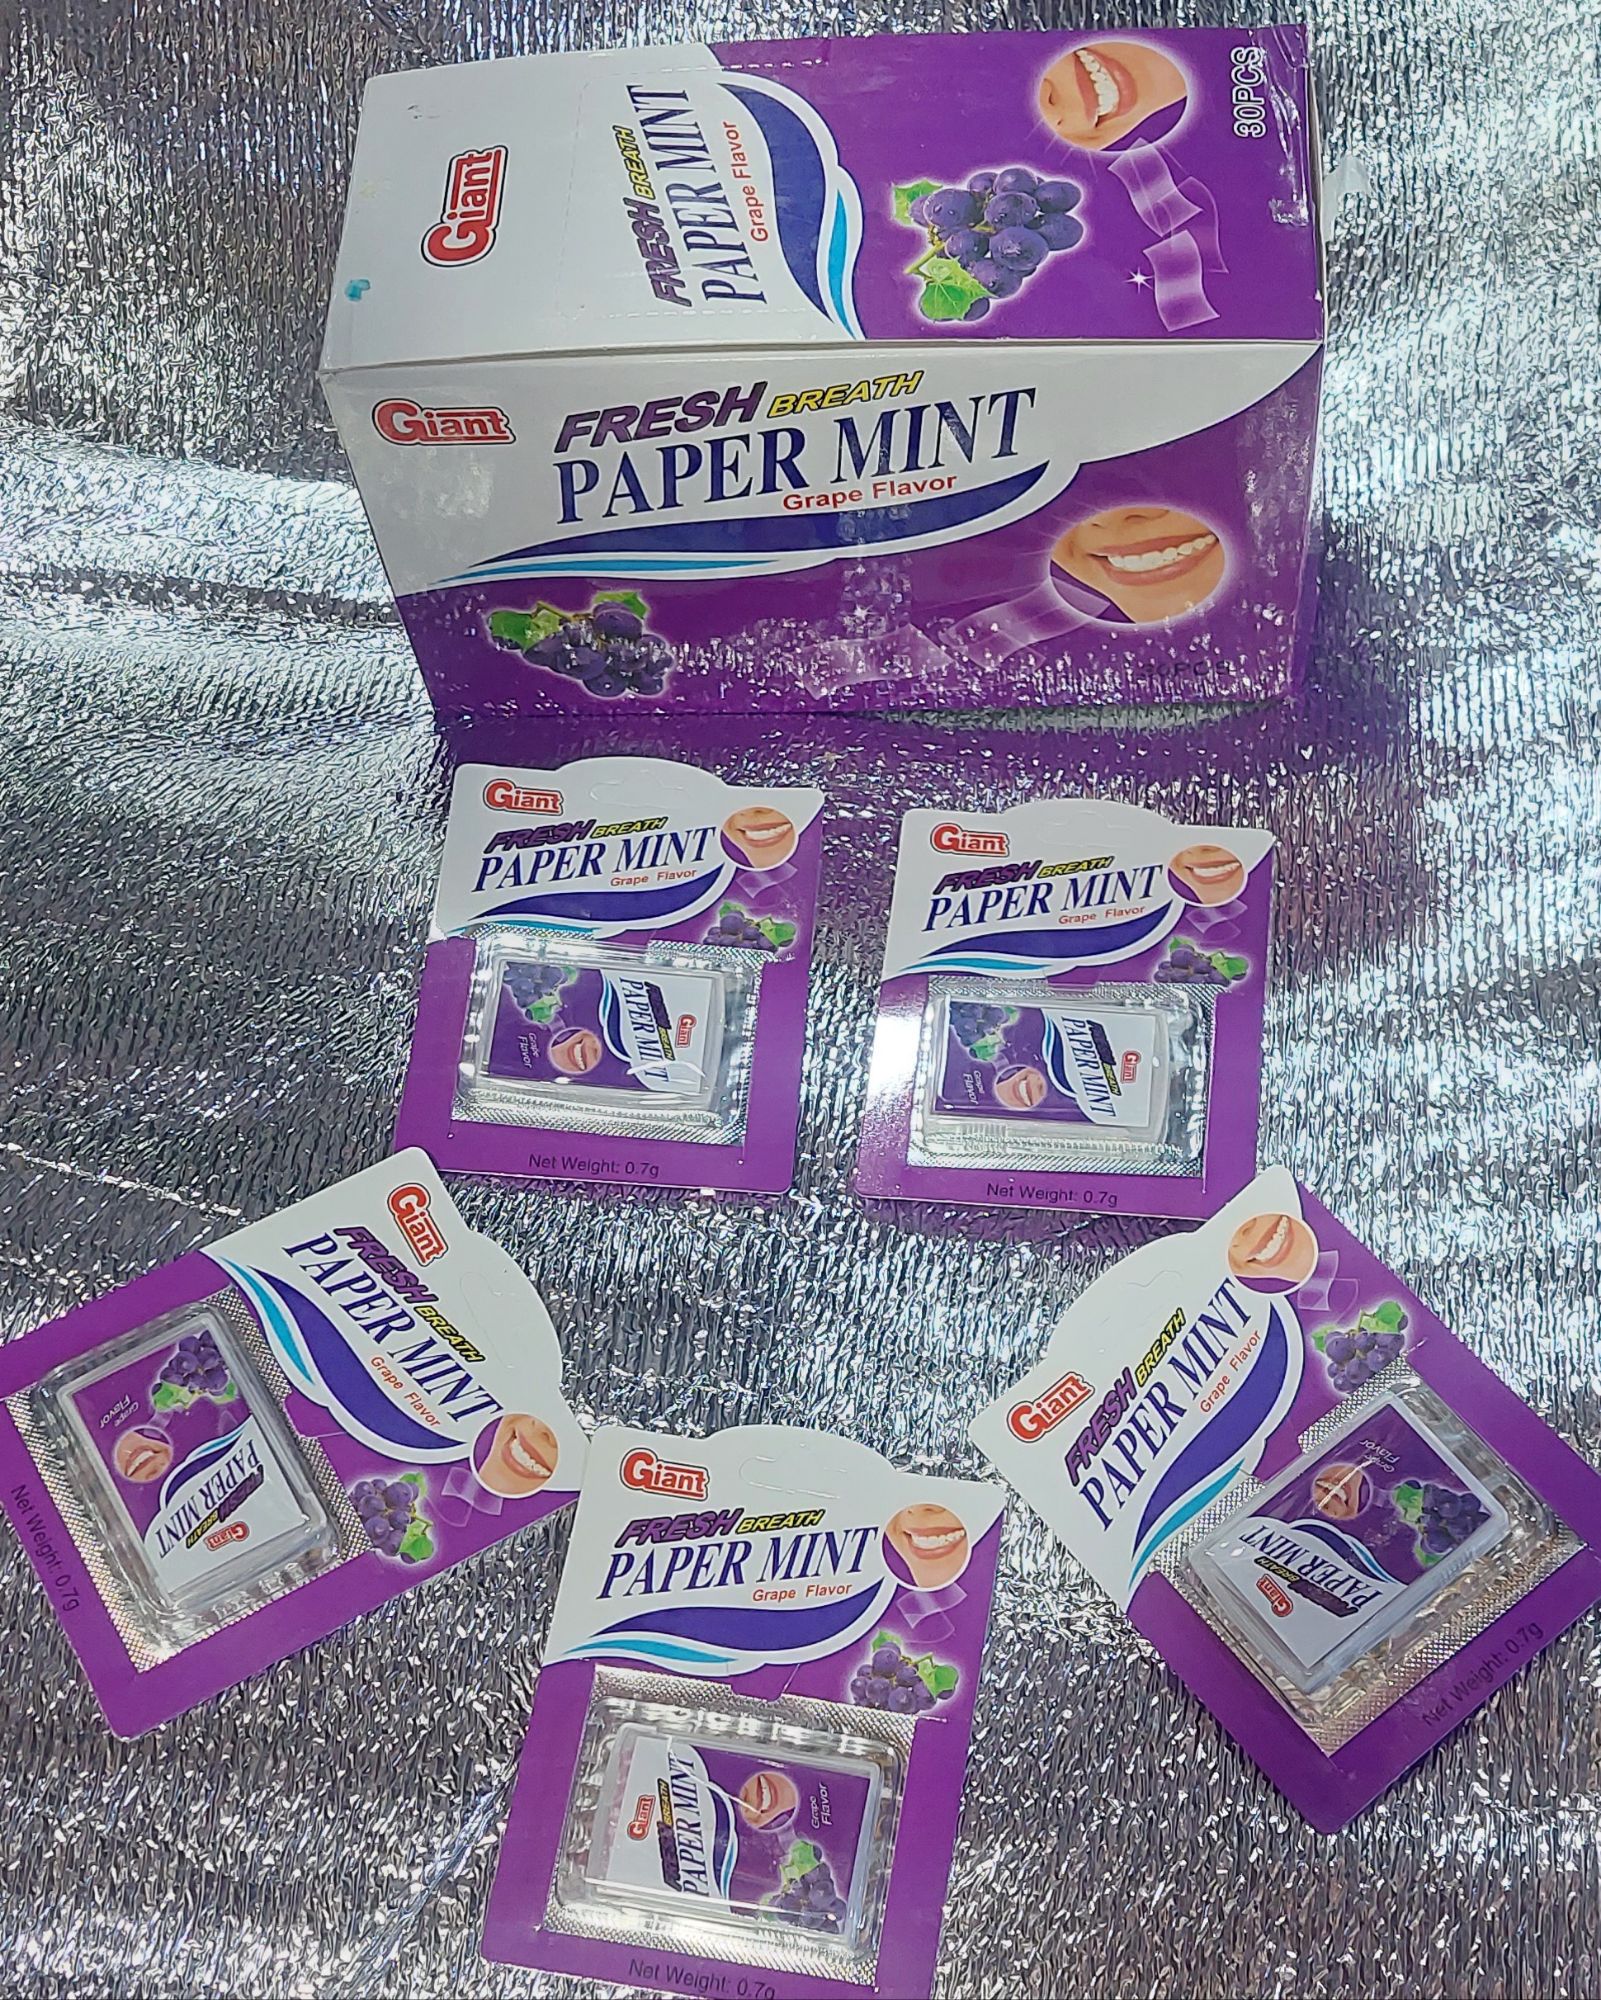 PAPER MINT (Grape flavor) 30 PCS